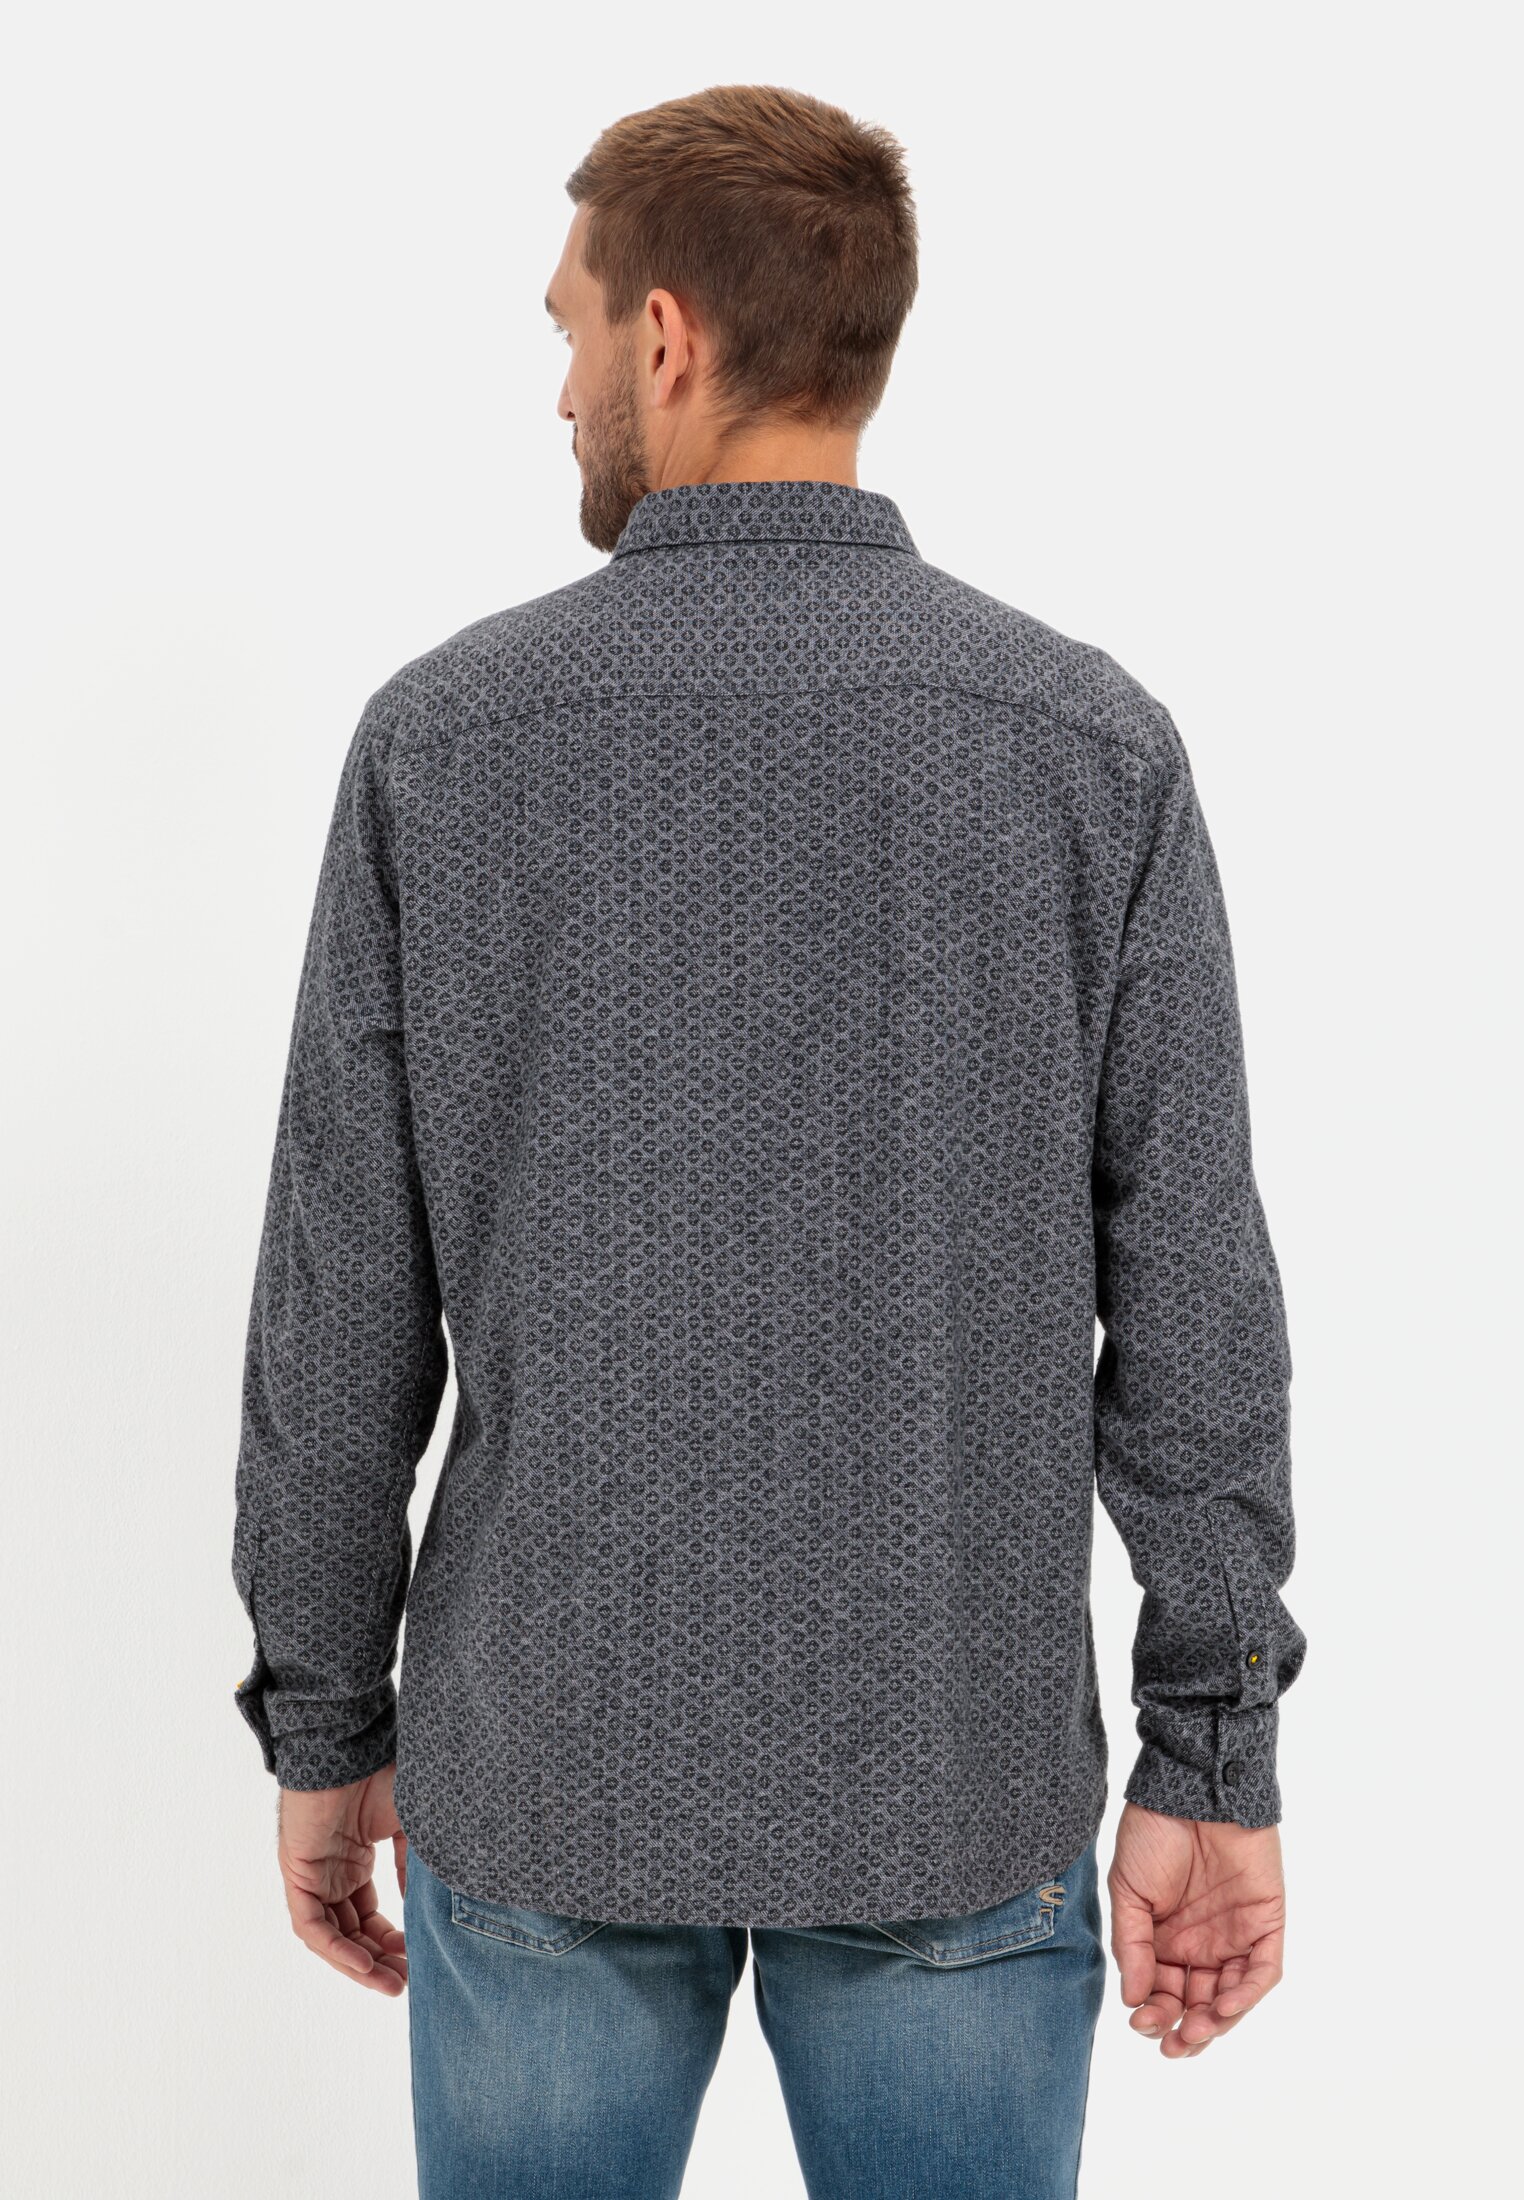 Flannel shirt for Herren in Grey | M | camel active